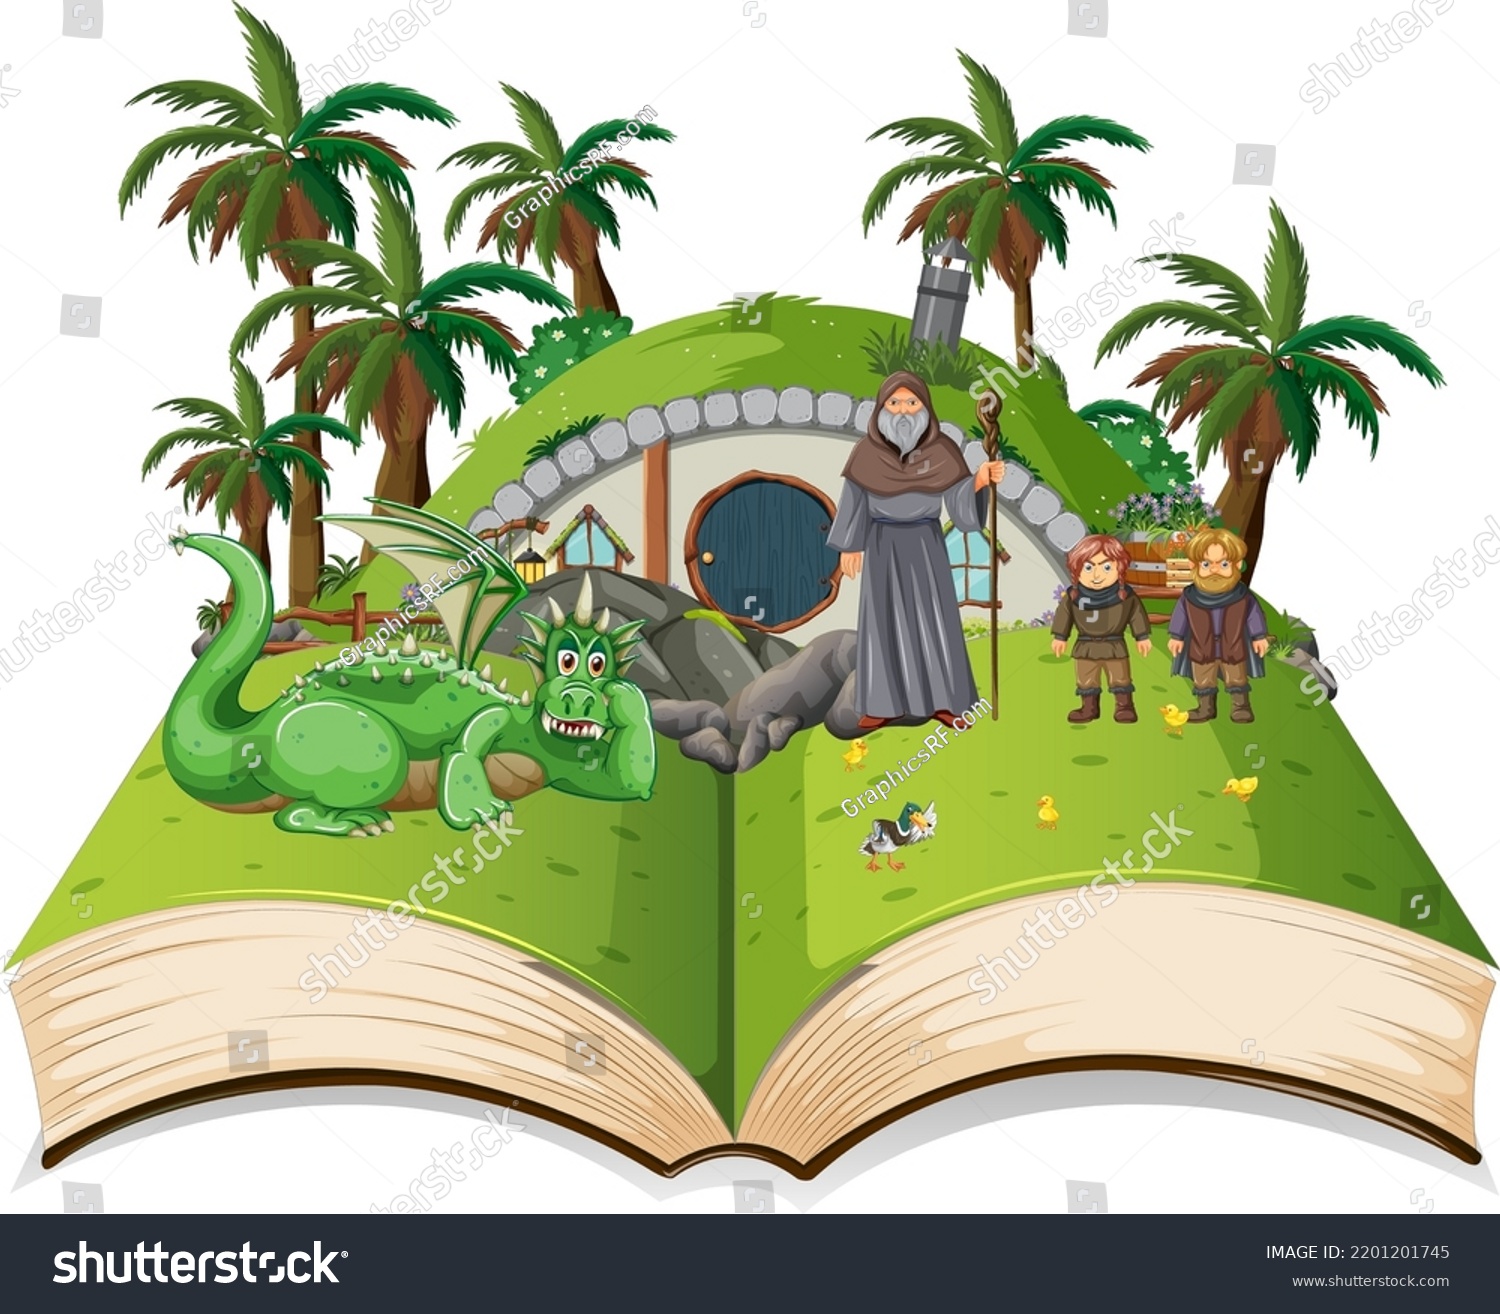 SVG of Medieval magic land scene on open book illustration svg